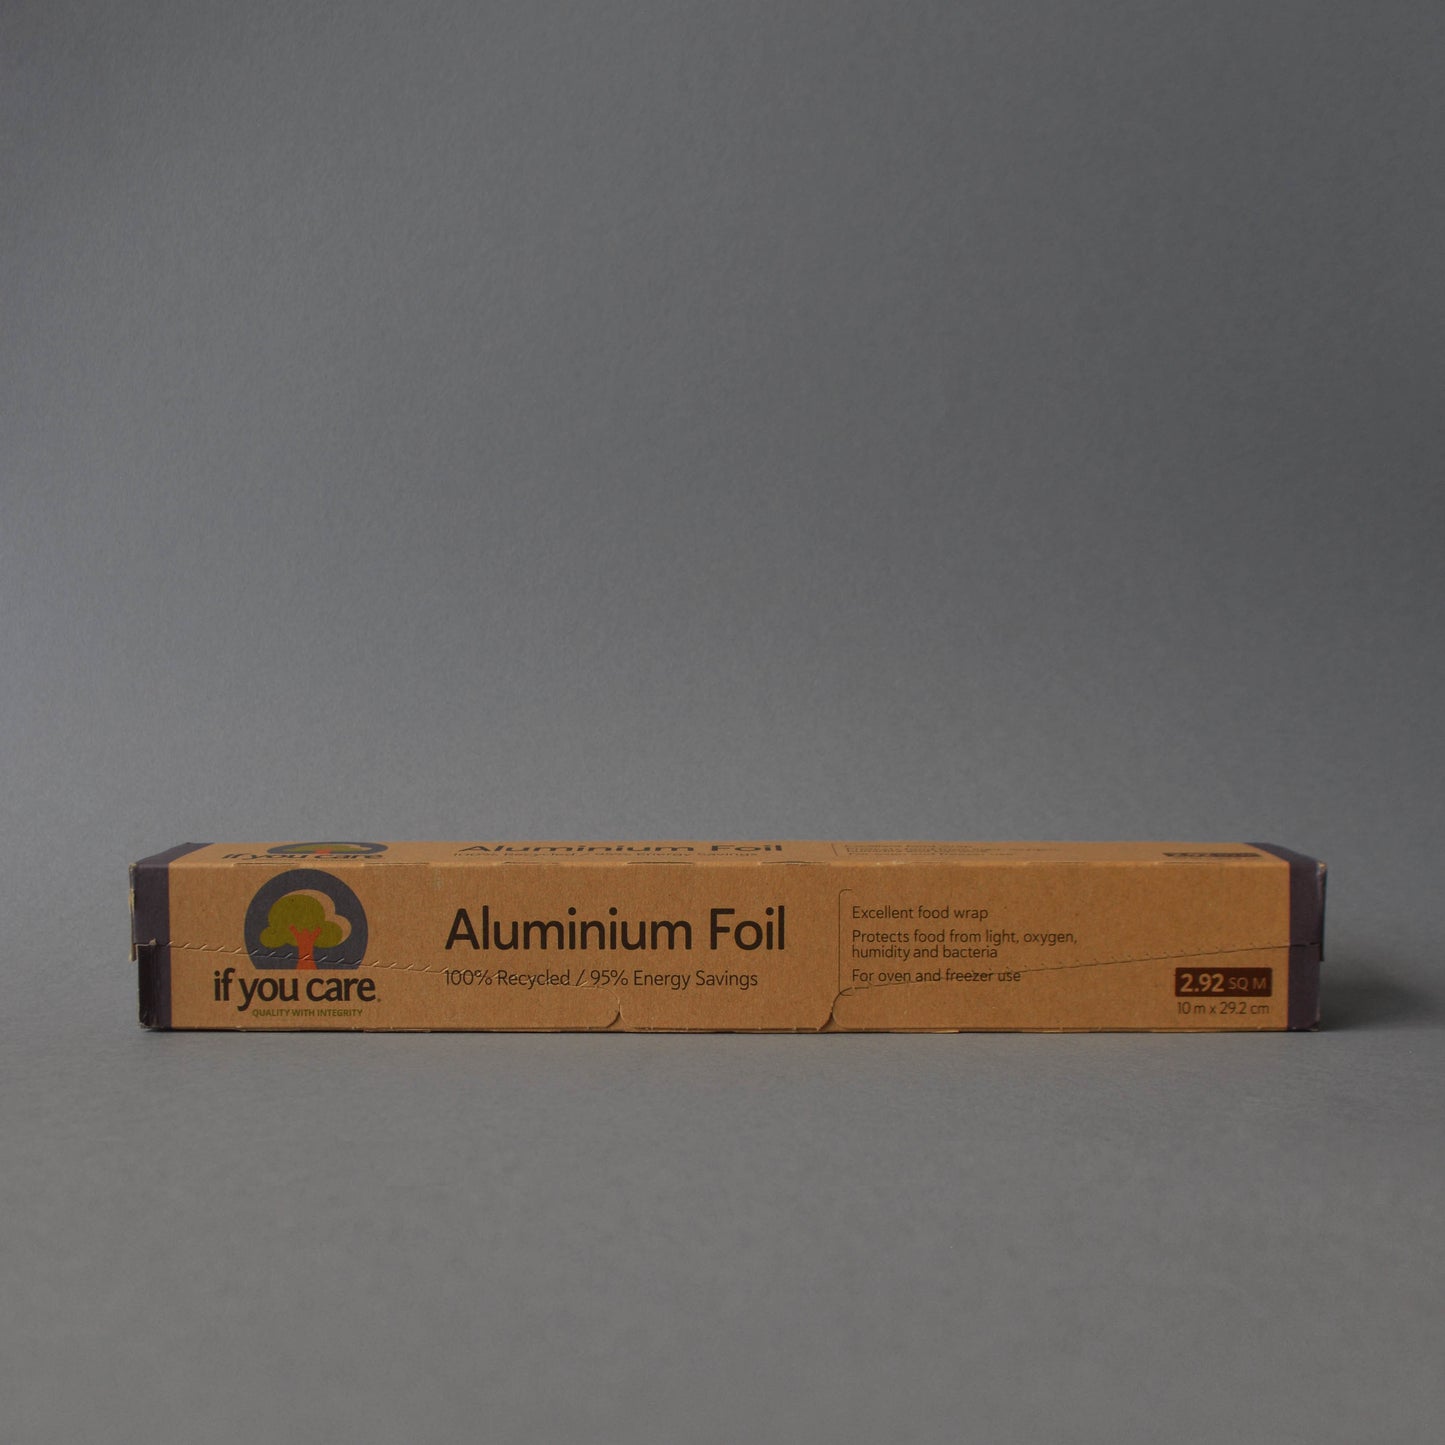 If You Care | Aluminium Foil